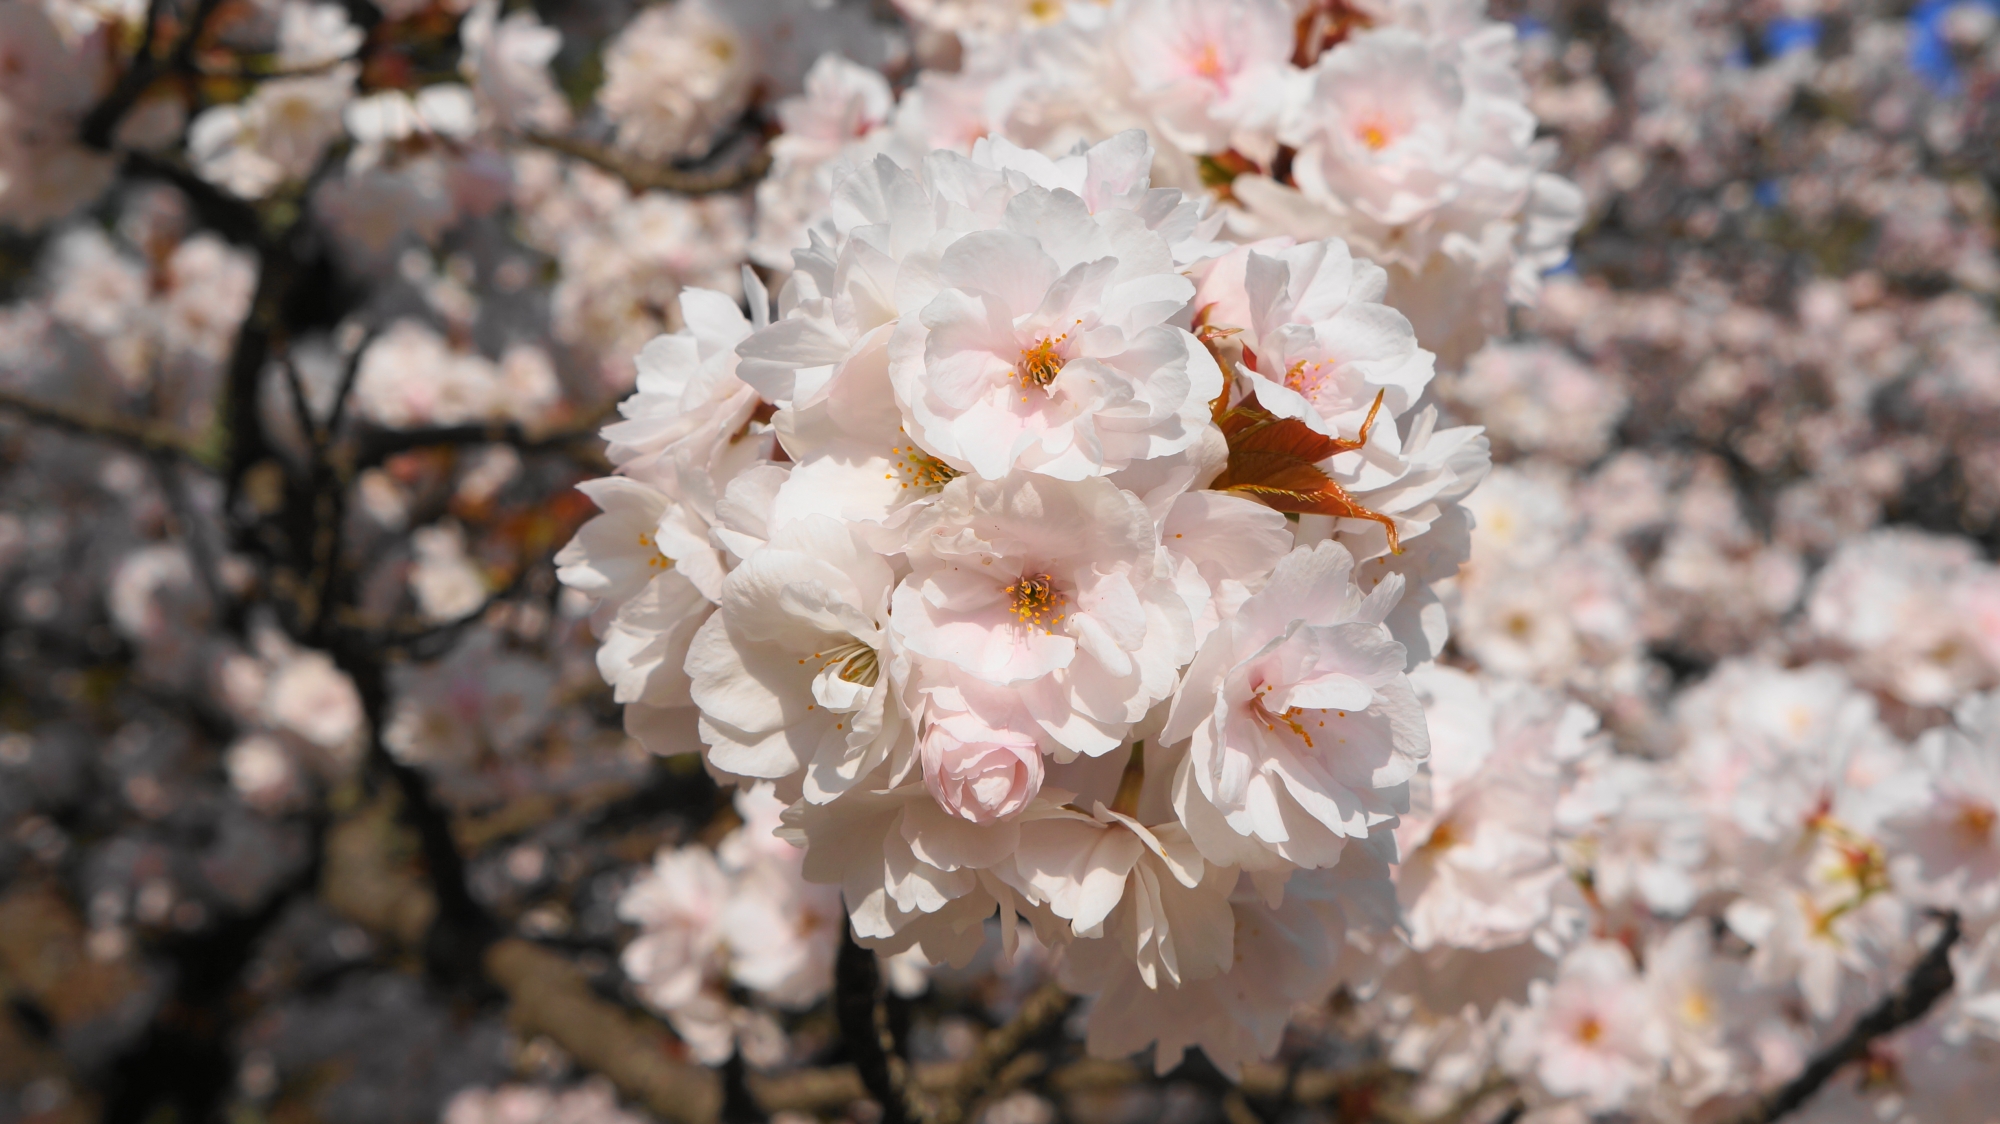 何となく優しい感じもする色合いや形の桜